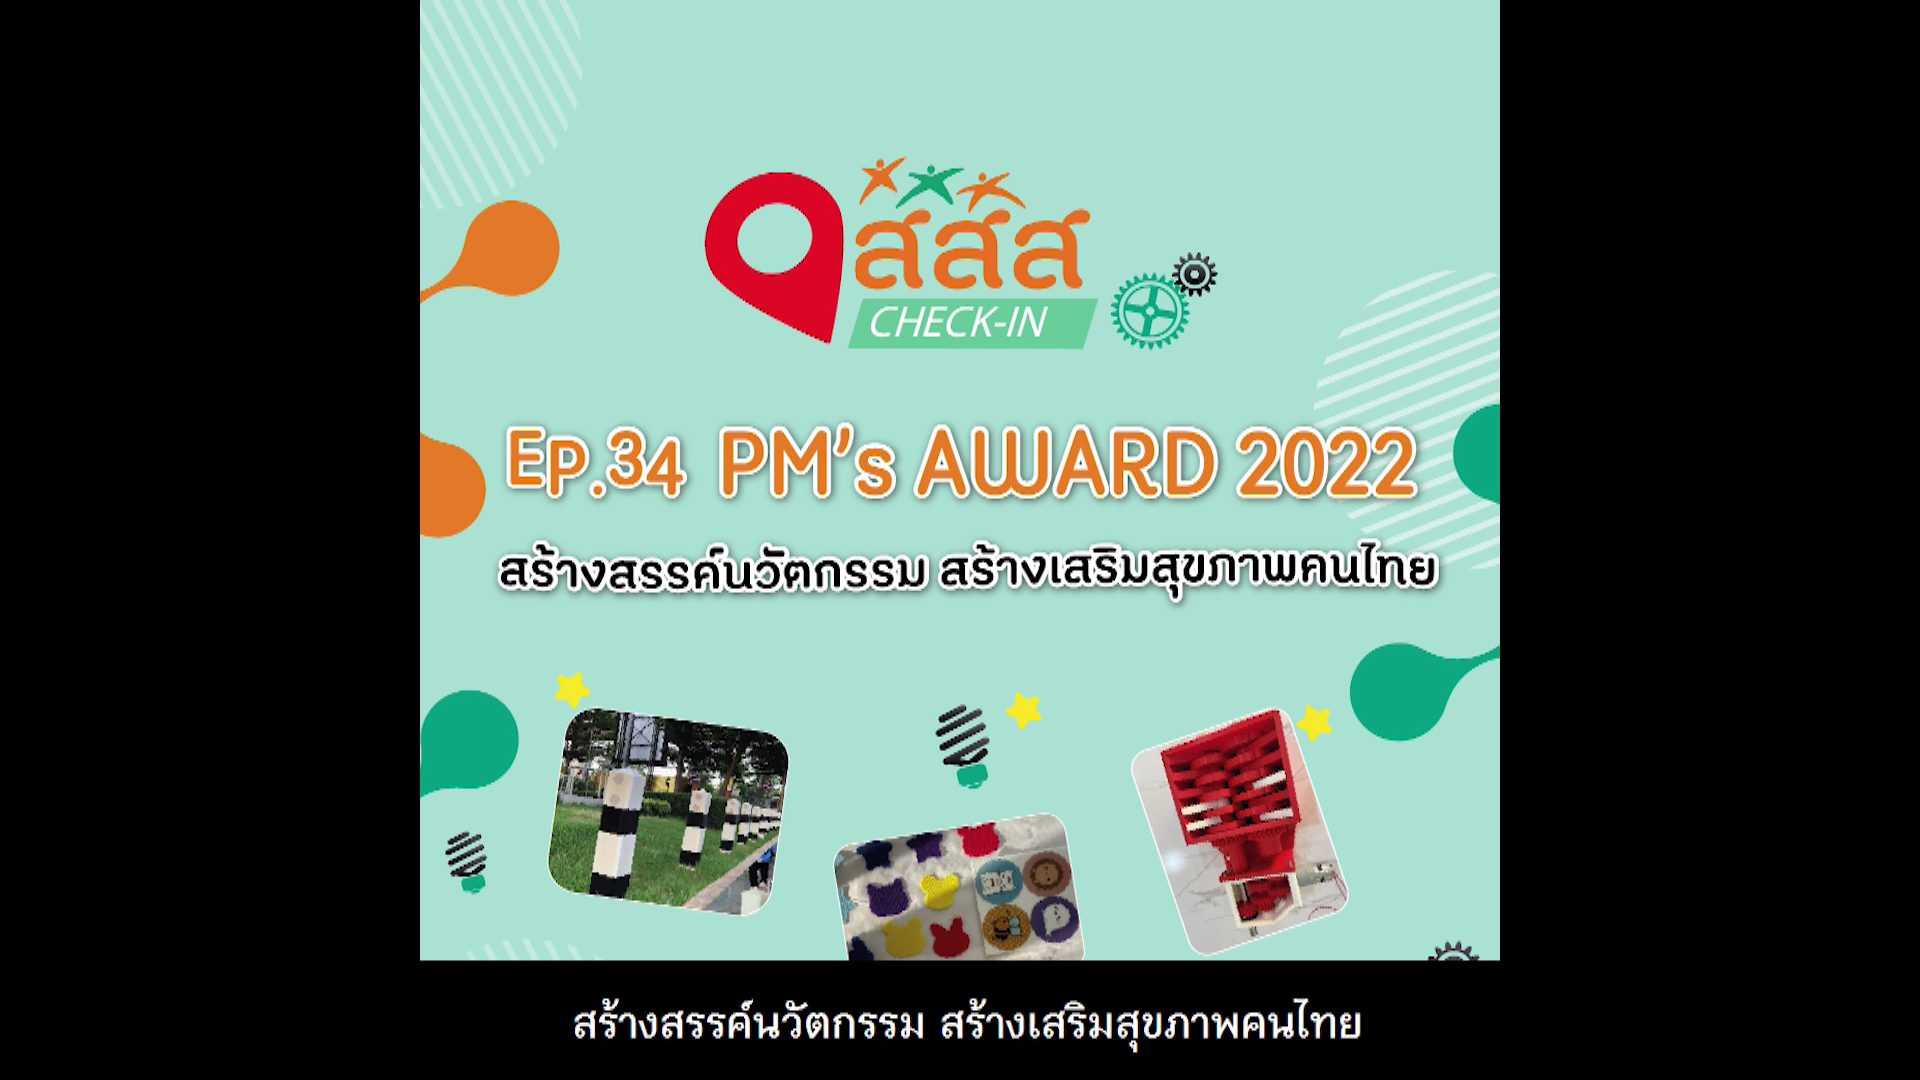 PM's AWARD 2022 สร้างสรรค์นวัตกรรม สร้างเสริมสุขภาพคนไทย